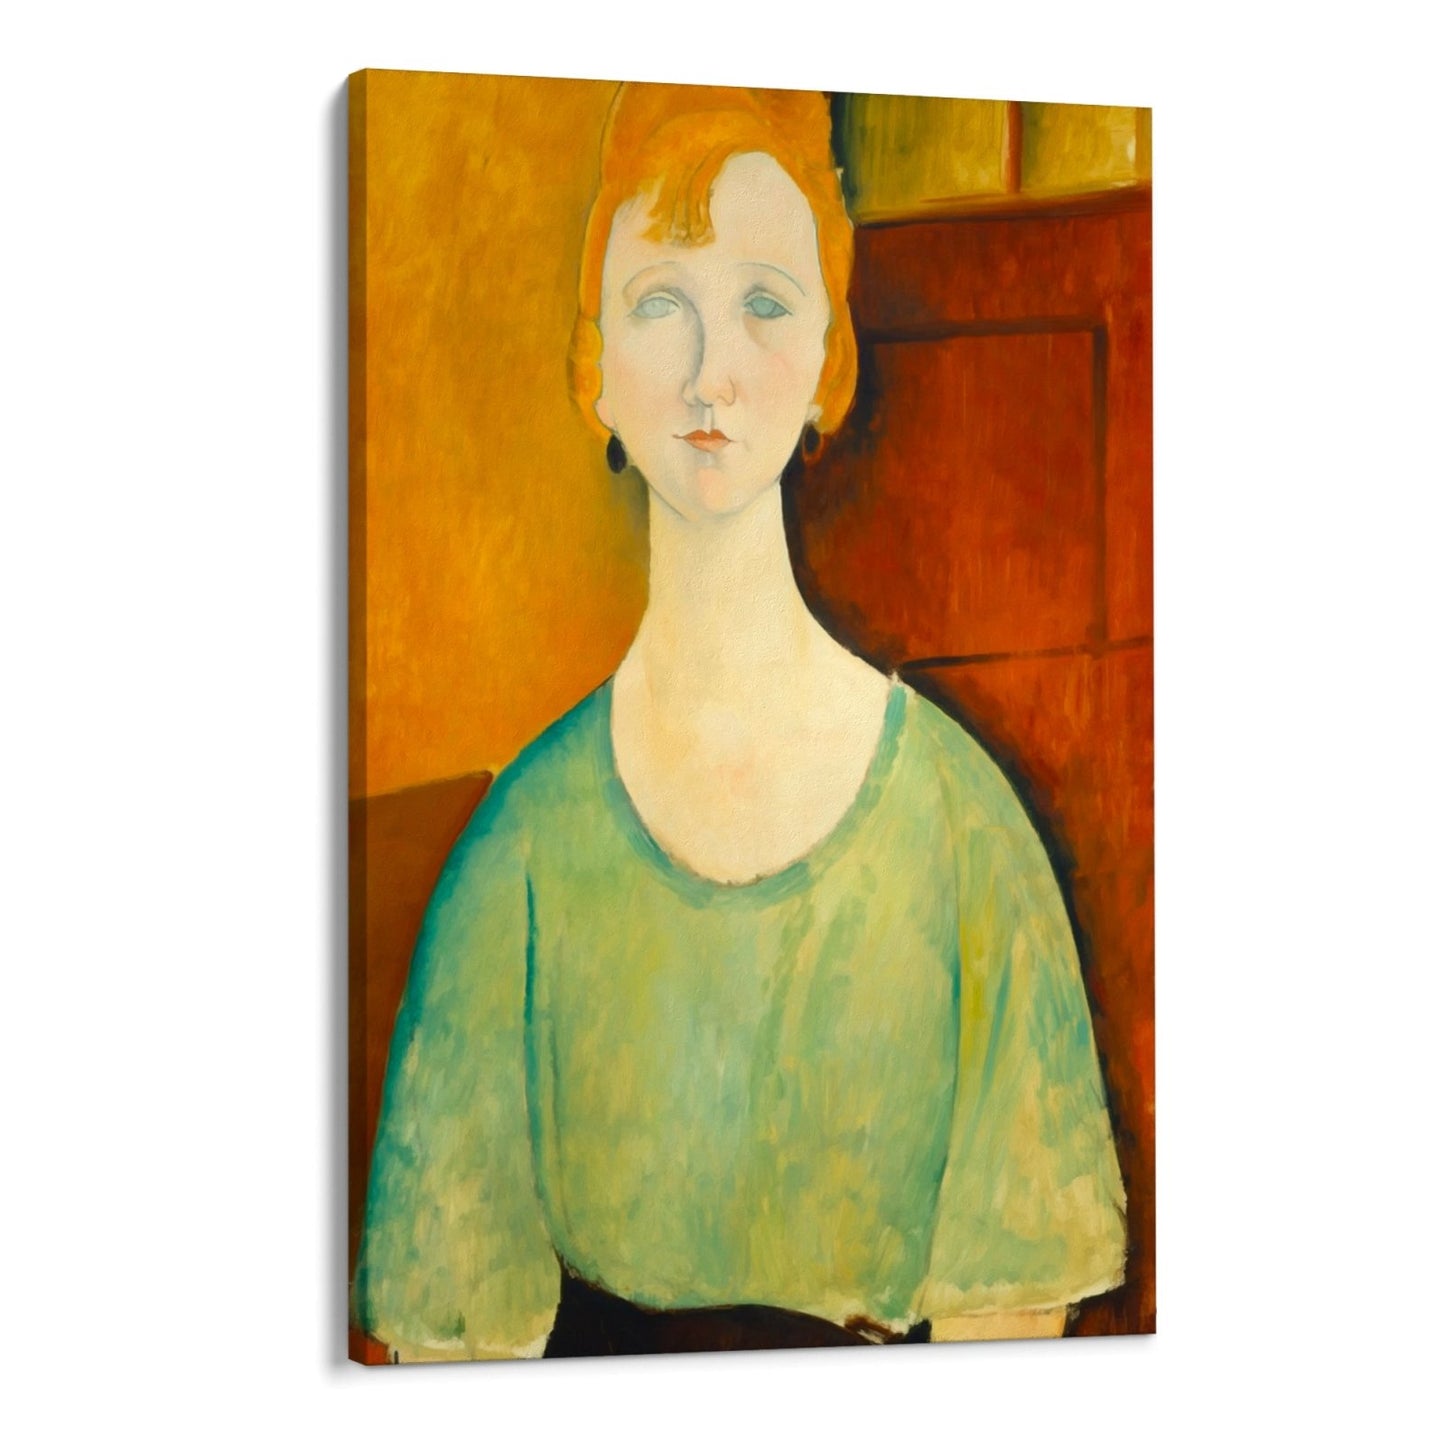 Tyttö vihreässä puserossa, Amedeo Modigliani